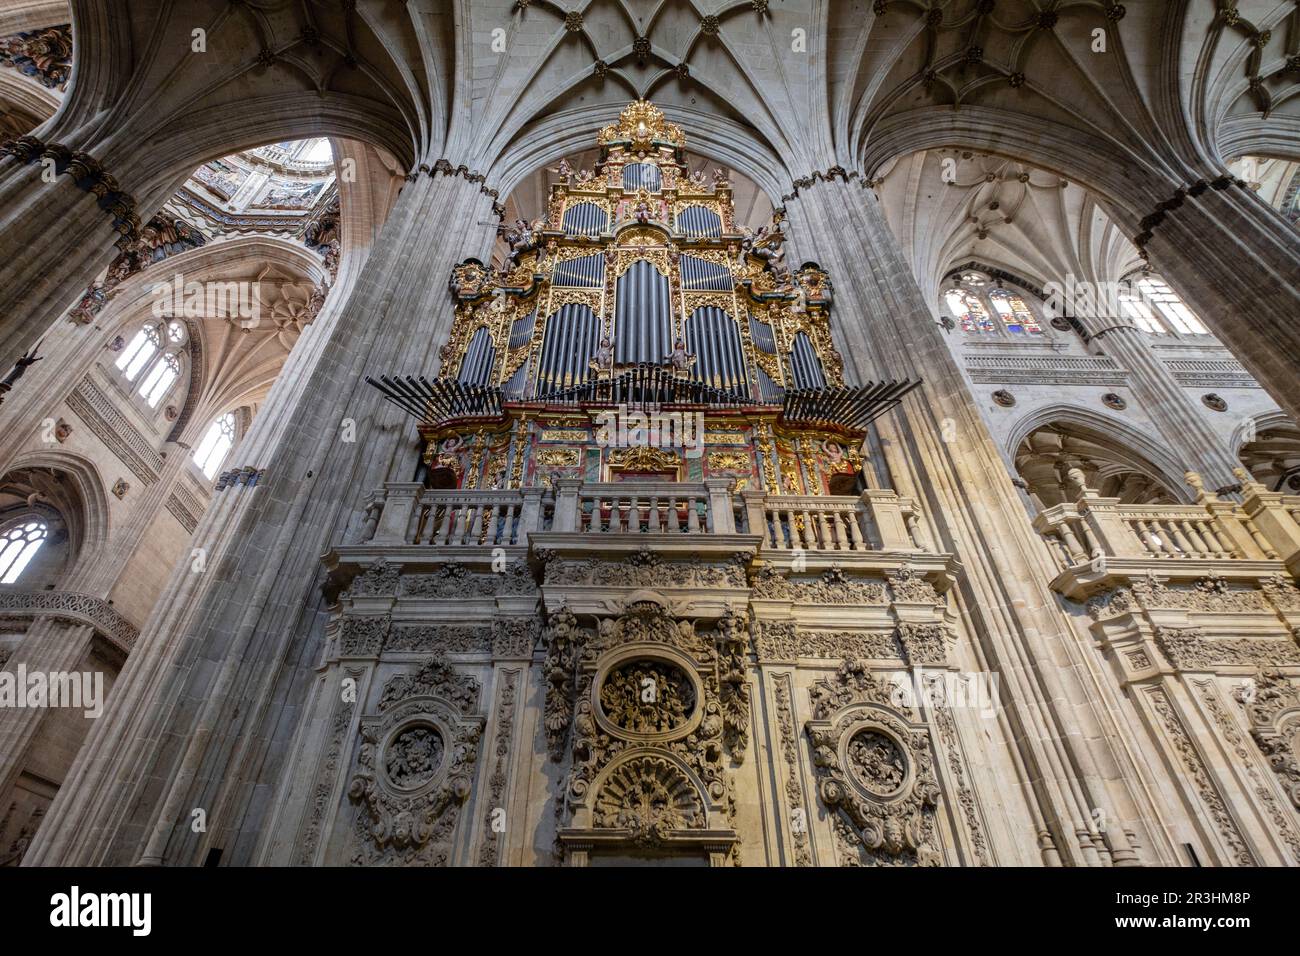 órgano del Evangelio, construido por Pedro de Echevarria en 1744, Catedral de la Asunción de la Virgen, Salamanca, comunidad autónoma de Castilla y León, Spain. Stock Photo